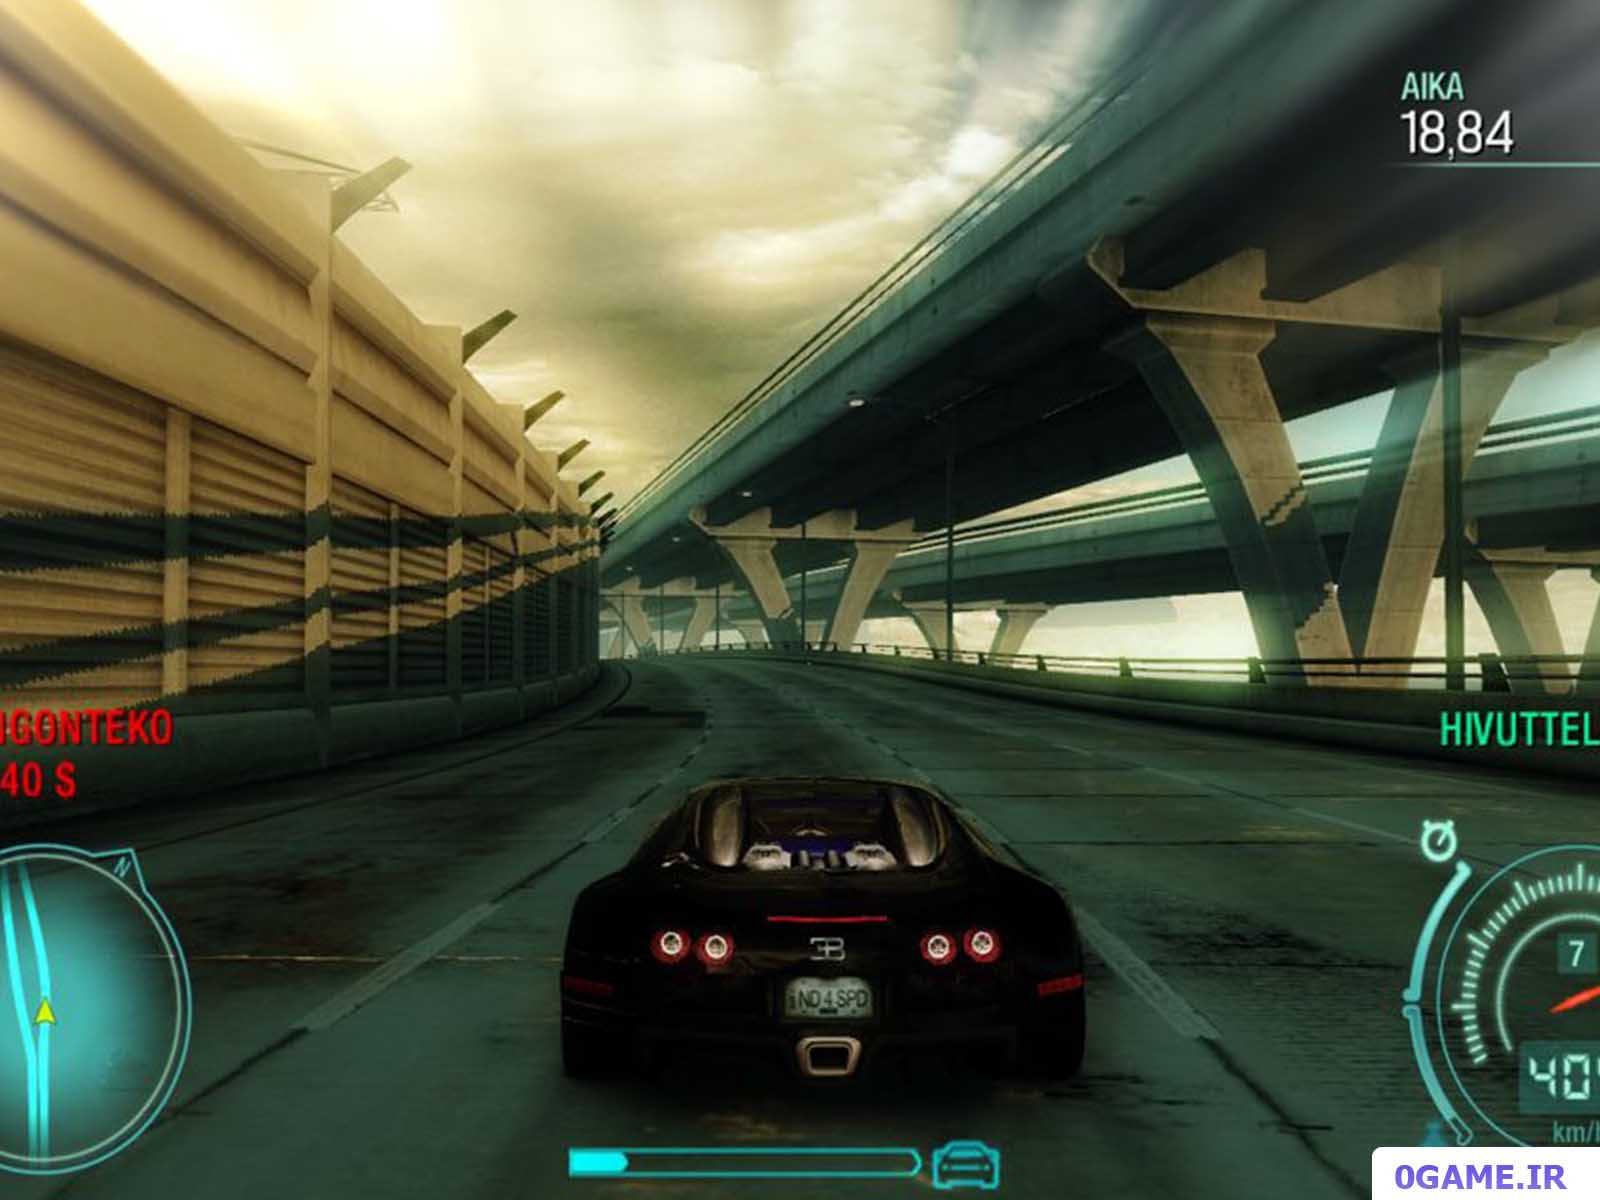 دانلود بازی نید فور اسپید آندرکاور (Need for Speed: Undercover) نسخه کامل برای کامپیوتر